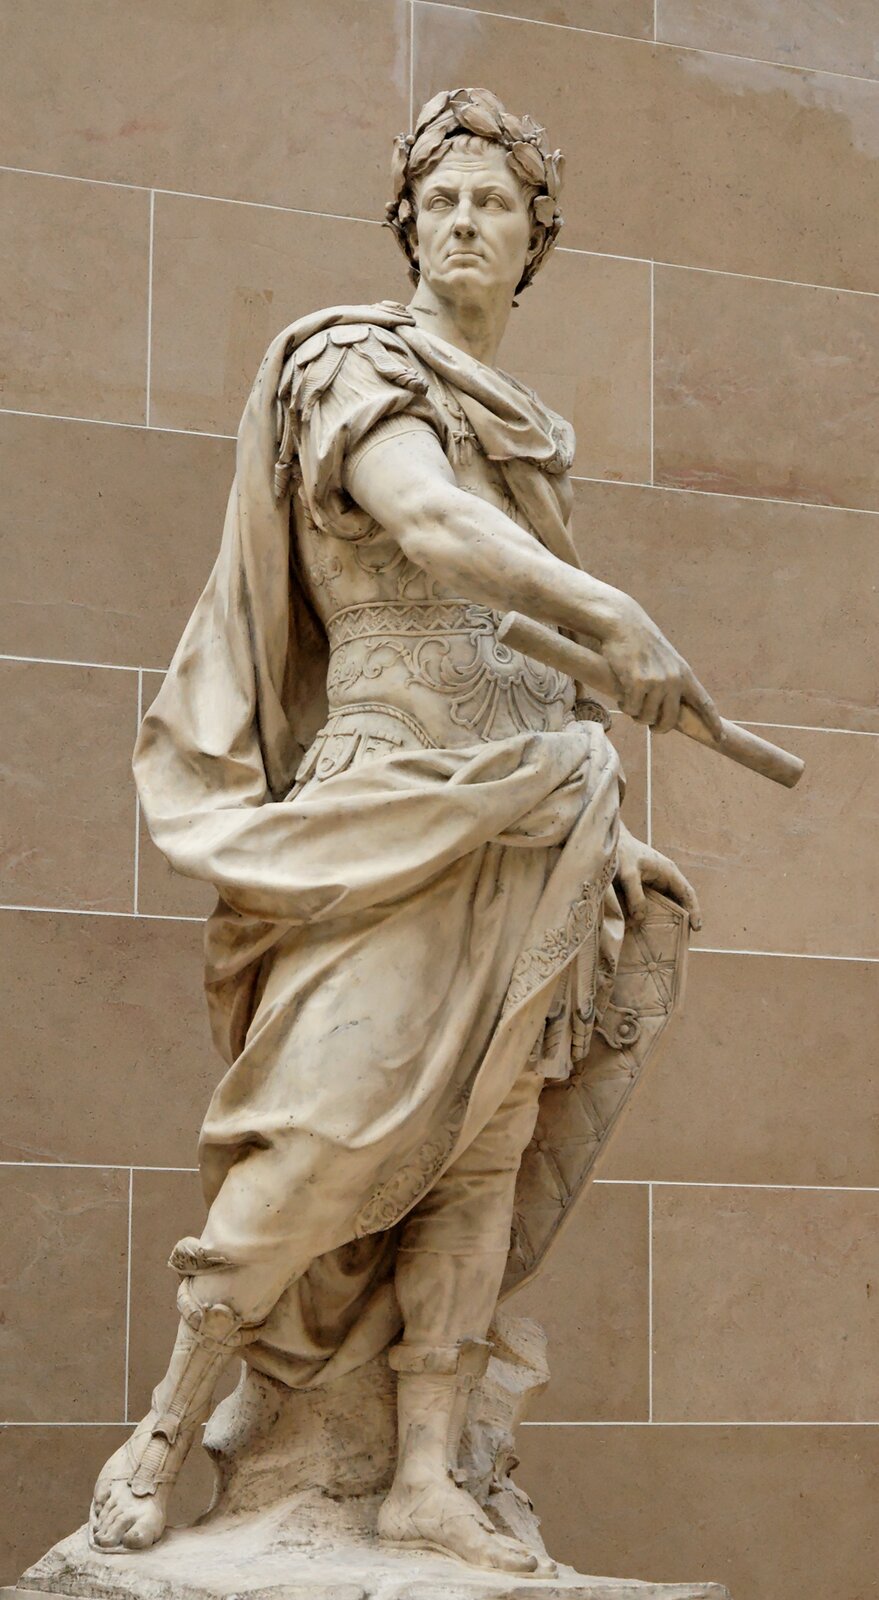 Ilustracja przedstawia rzeźbę „Juliusz Cezar” autorstwa Nicolasa Coustou. Rzeźba ukazuje sylwetkę mężczyzny - Juliusza Cezara. Postać mężczyzny stoi odziany w rzymskie szaty, na ramiona zarzuconą ma pelerynę. Postać na głowę założony ma laurowy wianek. W prawej dłoni trzyma papirus, lewą dłoń opiera o tarczę postawioną za nim. 